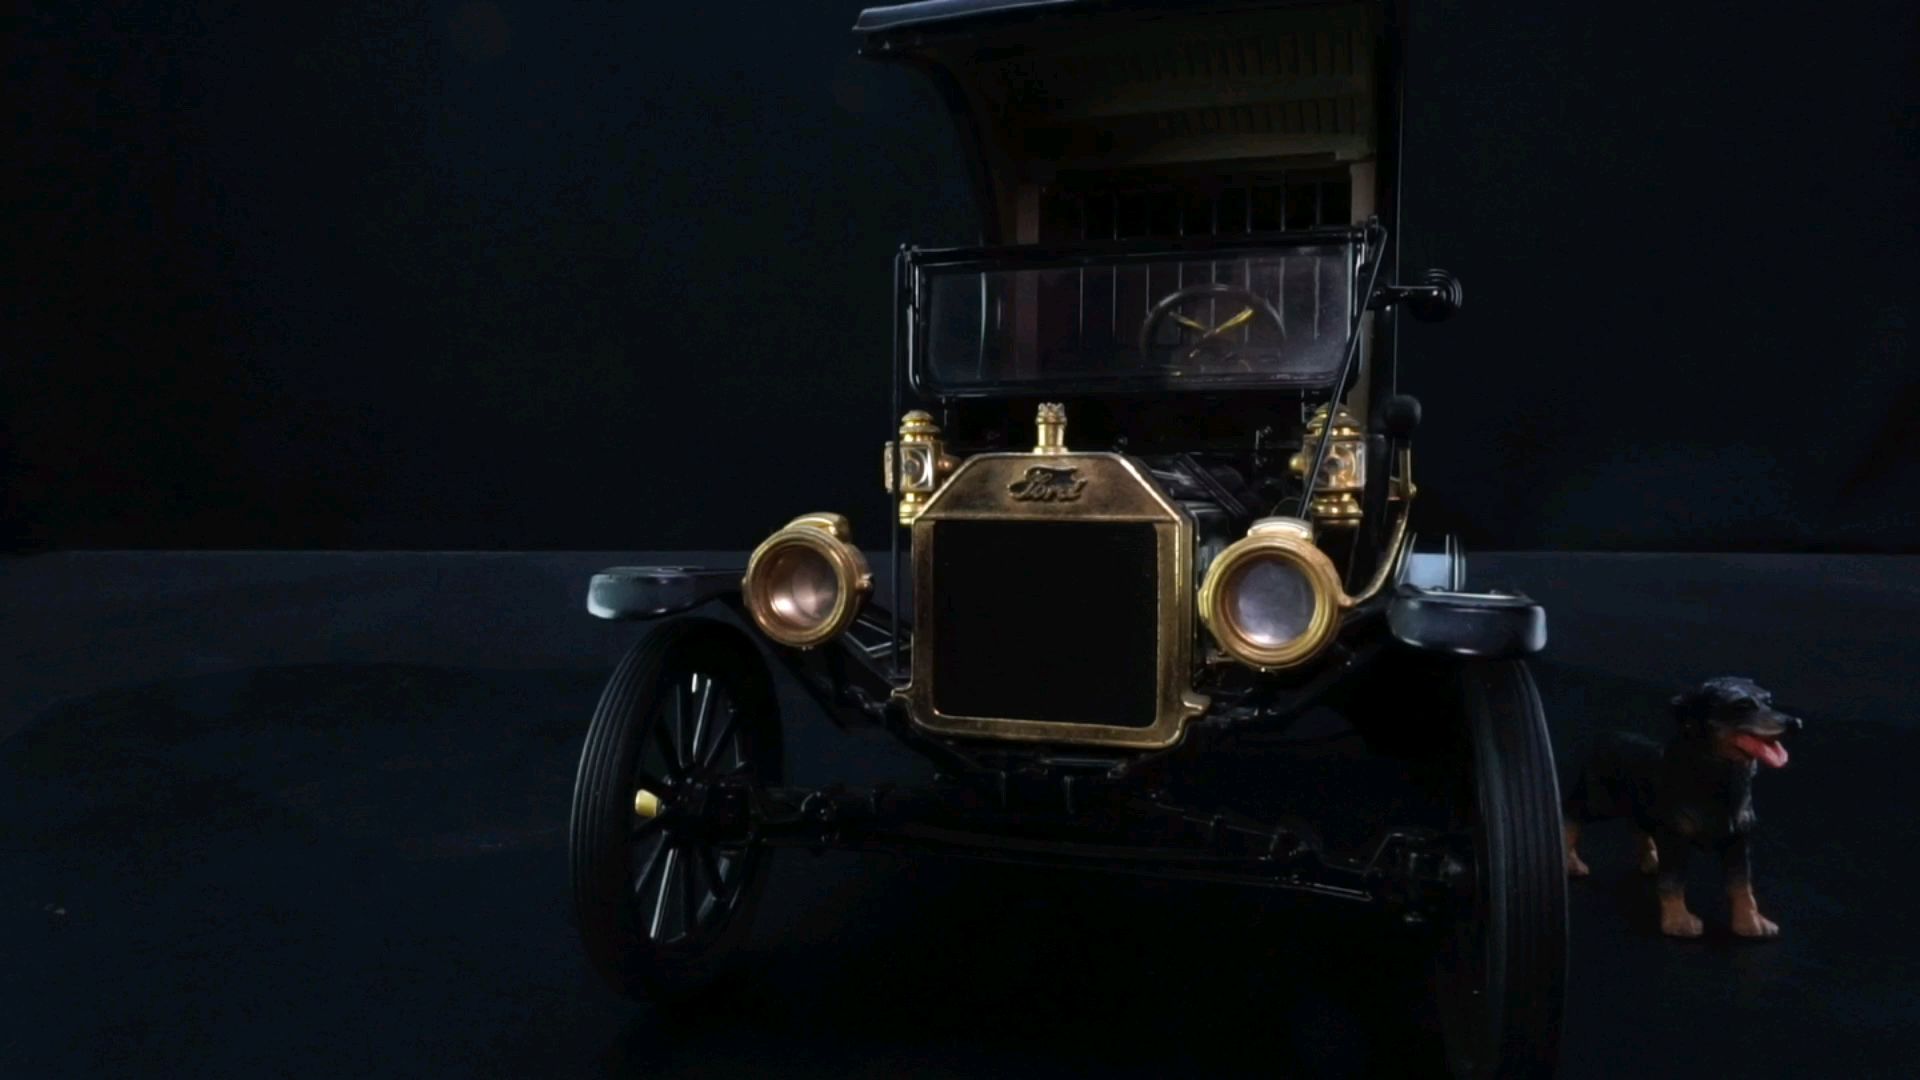 1915卓别林用过的道具车福特警车1：16，东晓汽车模型收藏馆藏品